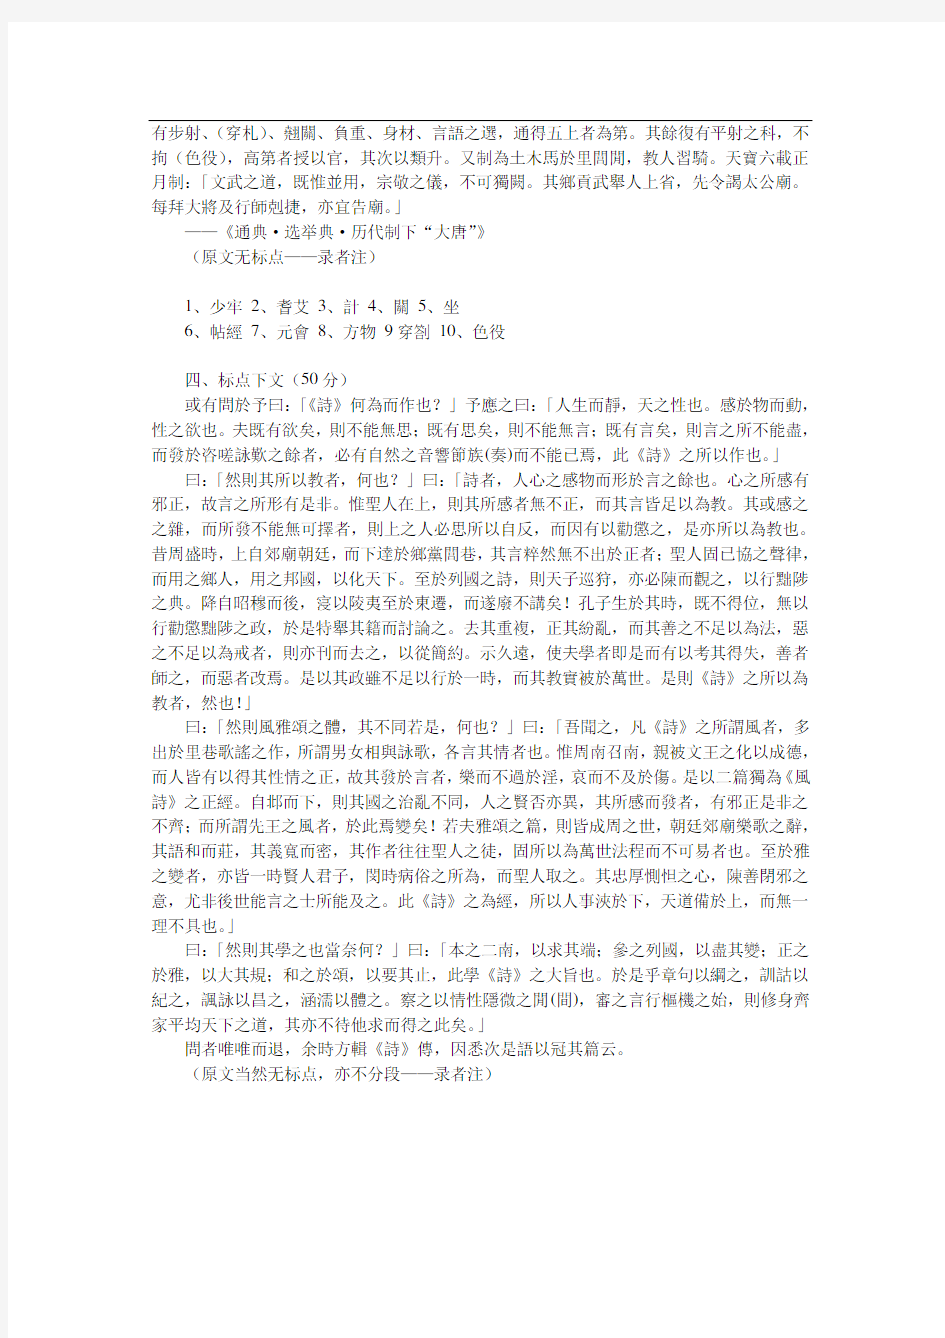 2005年北京大学古代汉语考研真题(回忆版)-考研真题资料